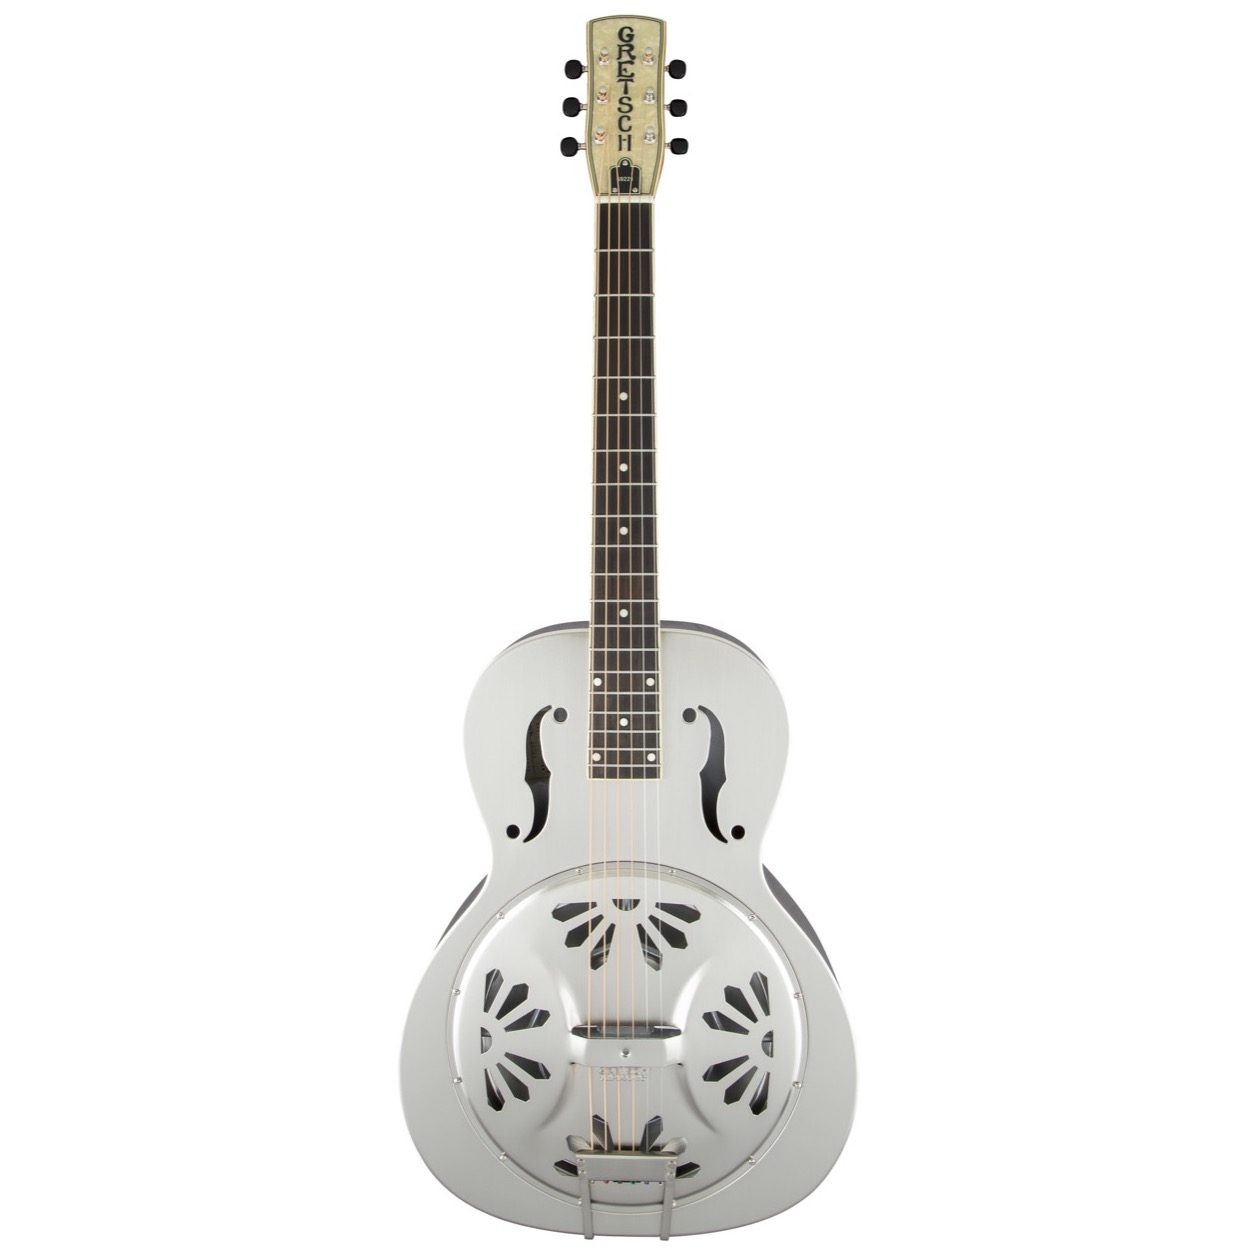 Gretsch G 9221 / G9221 Bobtail Steel Round-Neck A.E., Steel Body Spider Cone Resonator Guitar, Fishman® Nashville Resonator Pickup